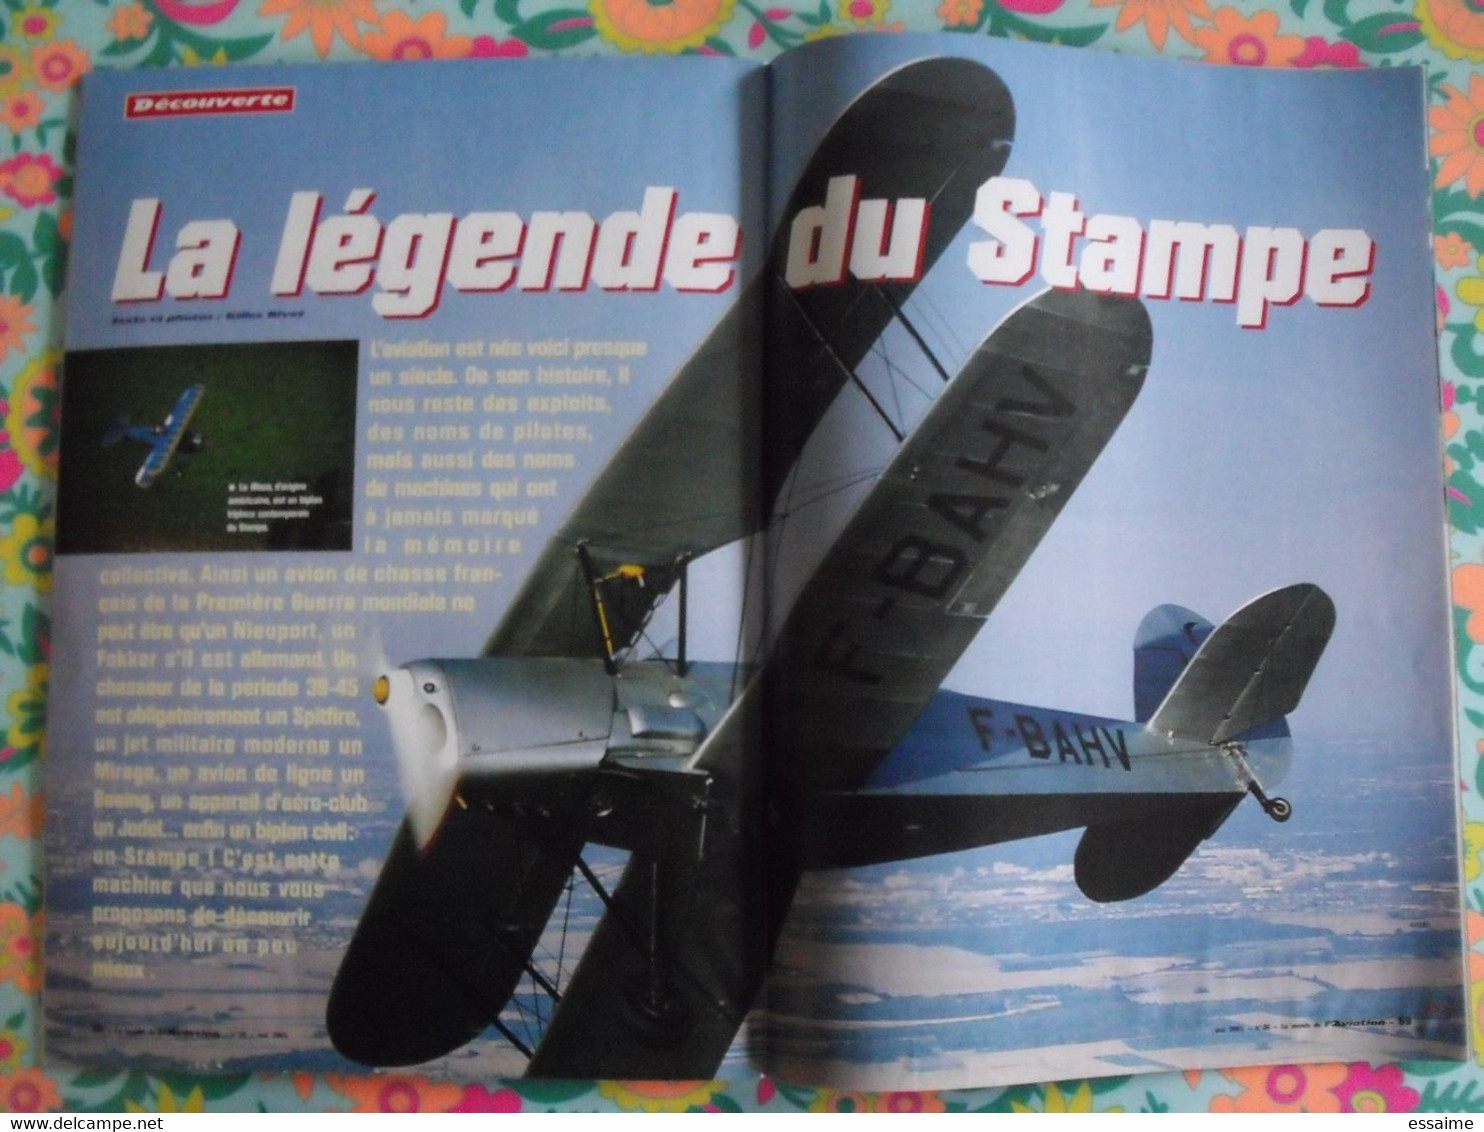 3 revues Le Monde de l'Aviation n° 9, 26, 27 (1999, 2001). Harrier, le bourget 2001 mirage III alizé